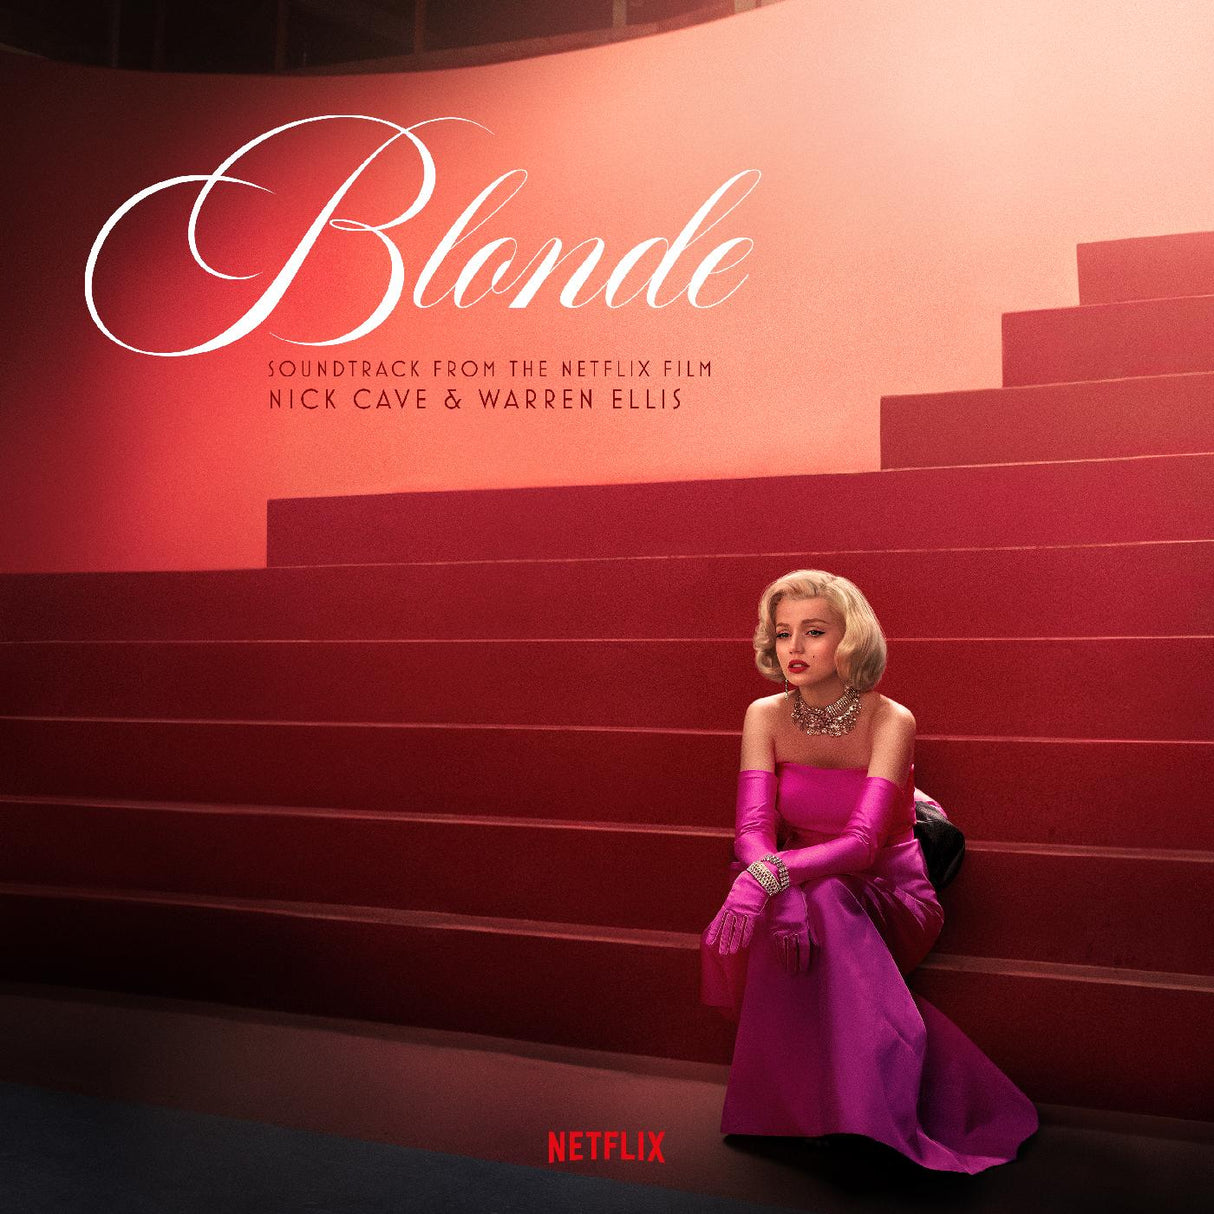 Nick & Warren Ellis Cave - Blonde (Soundtrack From The Netflix Film) (PINK VINYL) [Vinyl]